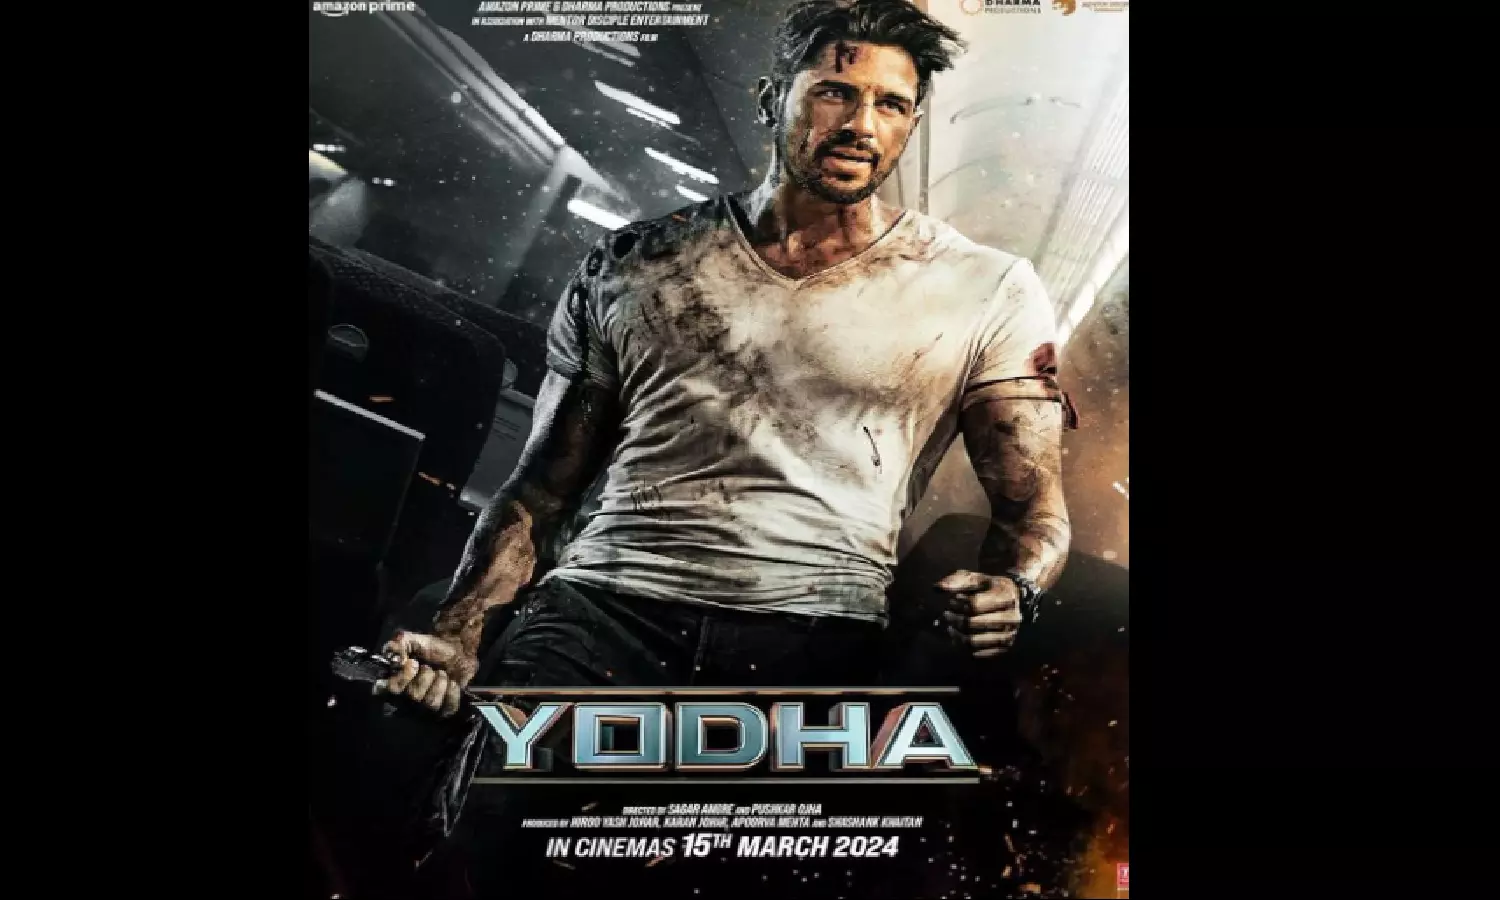 Yodha Trailer Review: एक्शन से भरपूर है, सिद्धार्थ मल्होत्रा व राशि खन्ना की फिल्म योद्धा